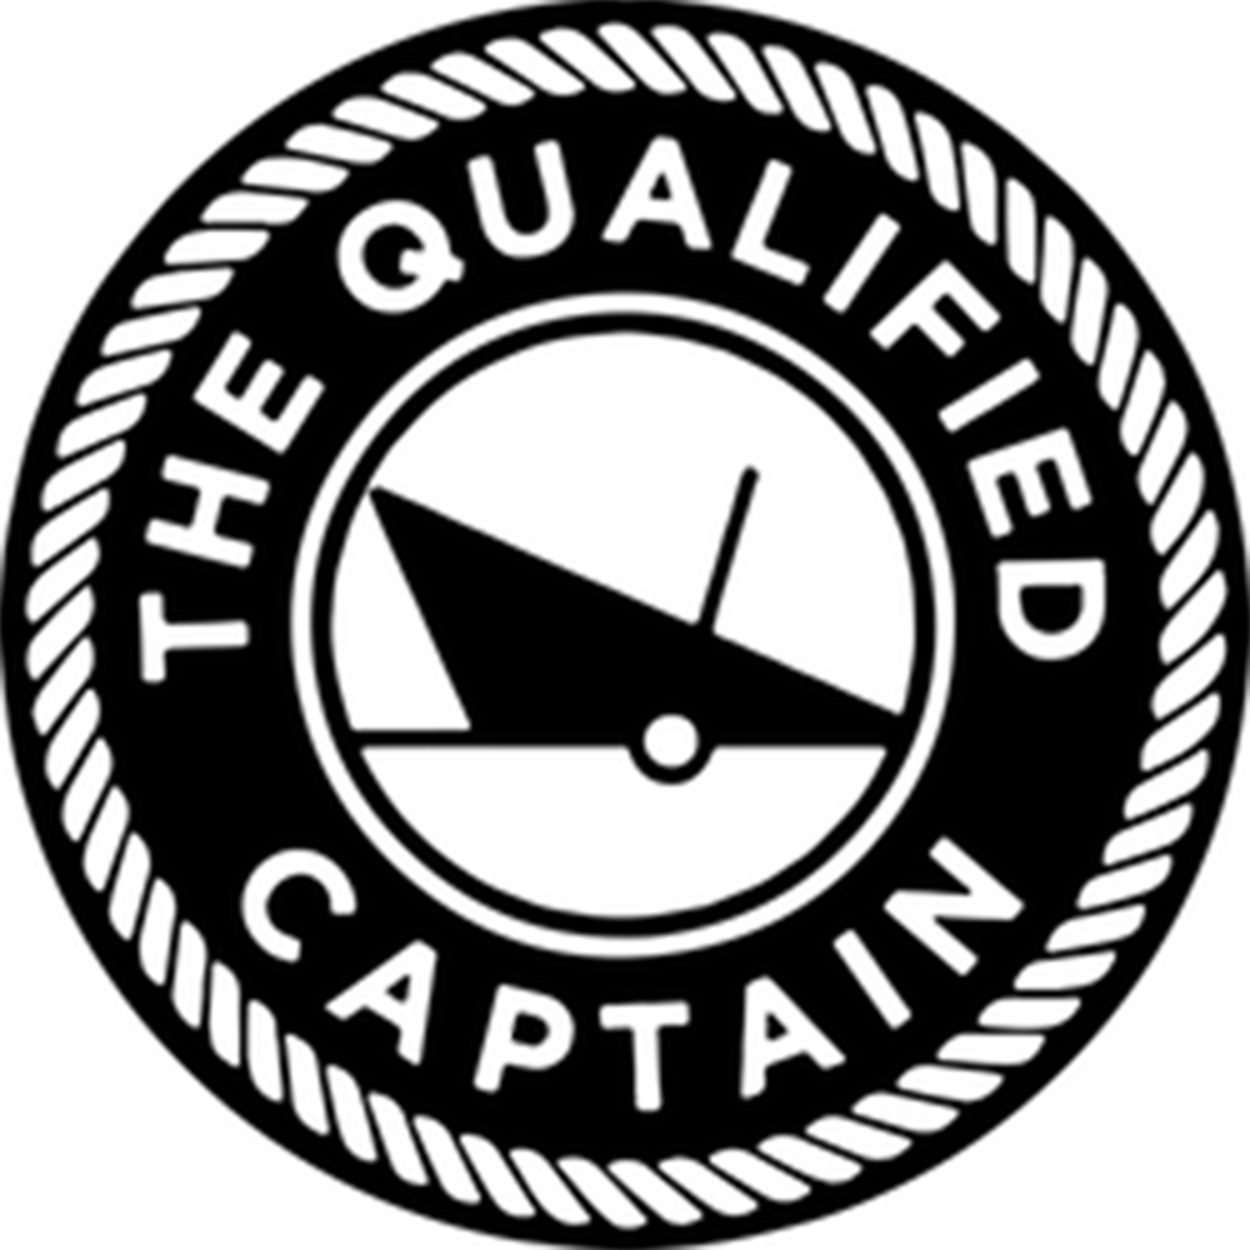 Qualified Captain logo